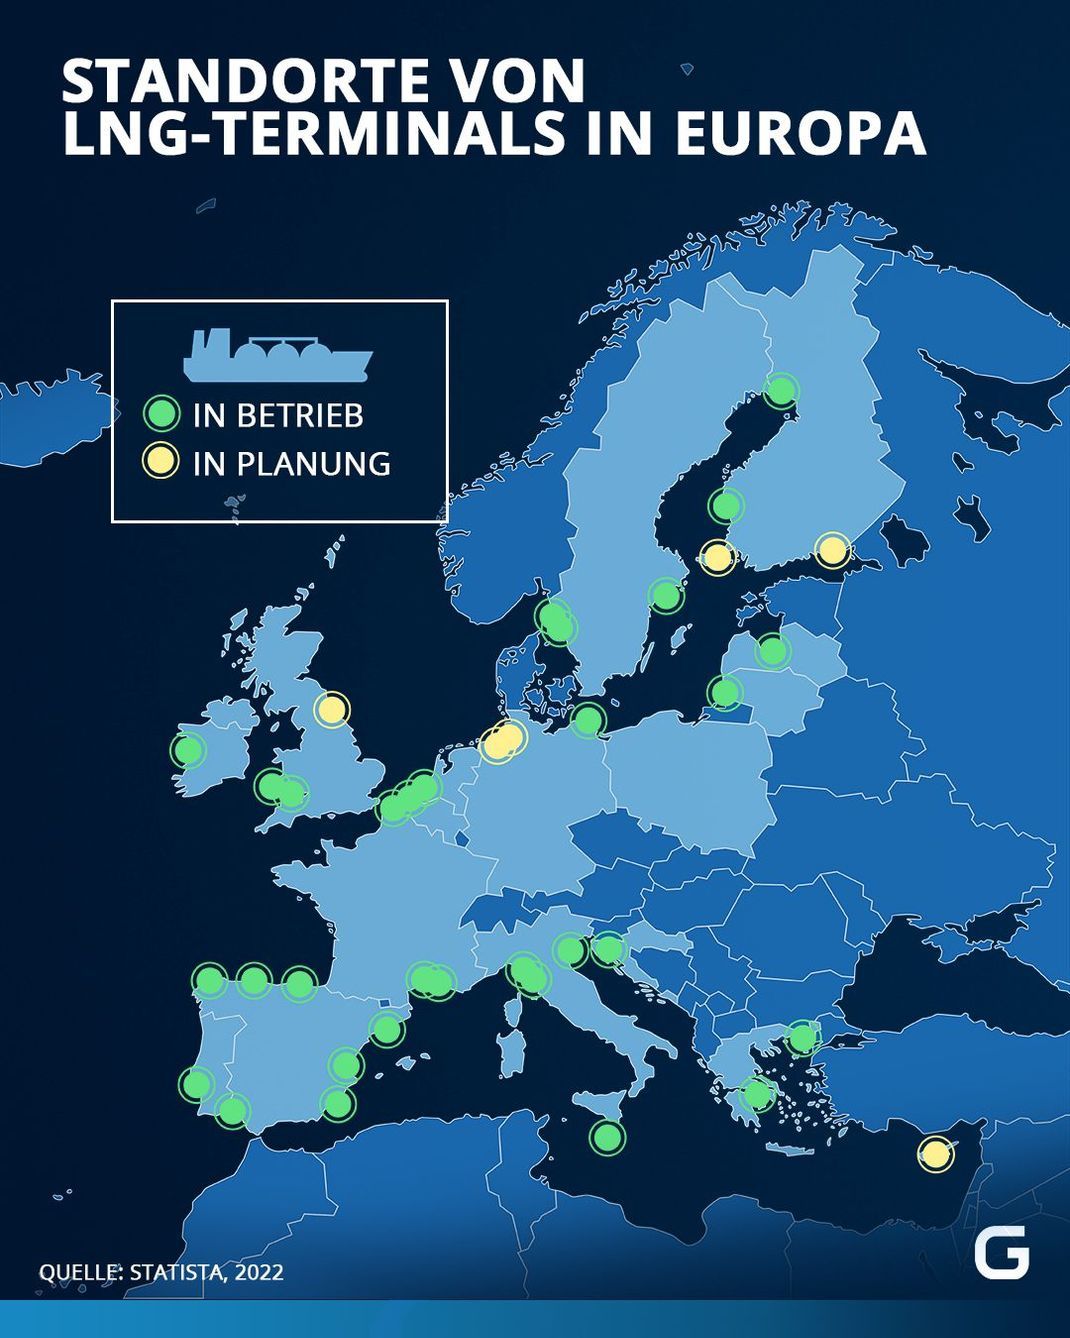 Überblick über die Lage und Anzahl der Terminals in Europa.